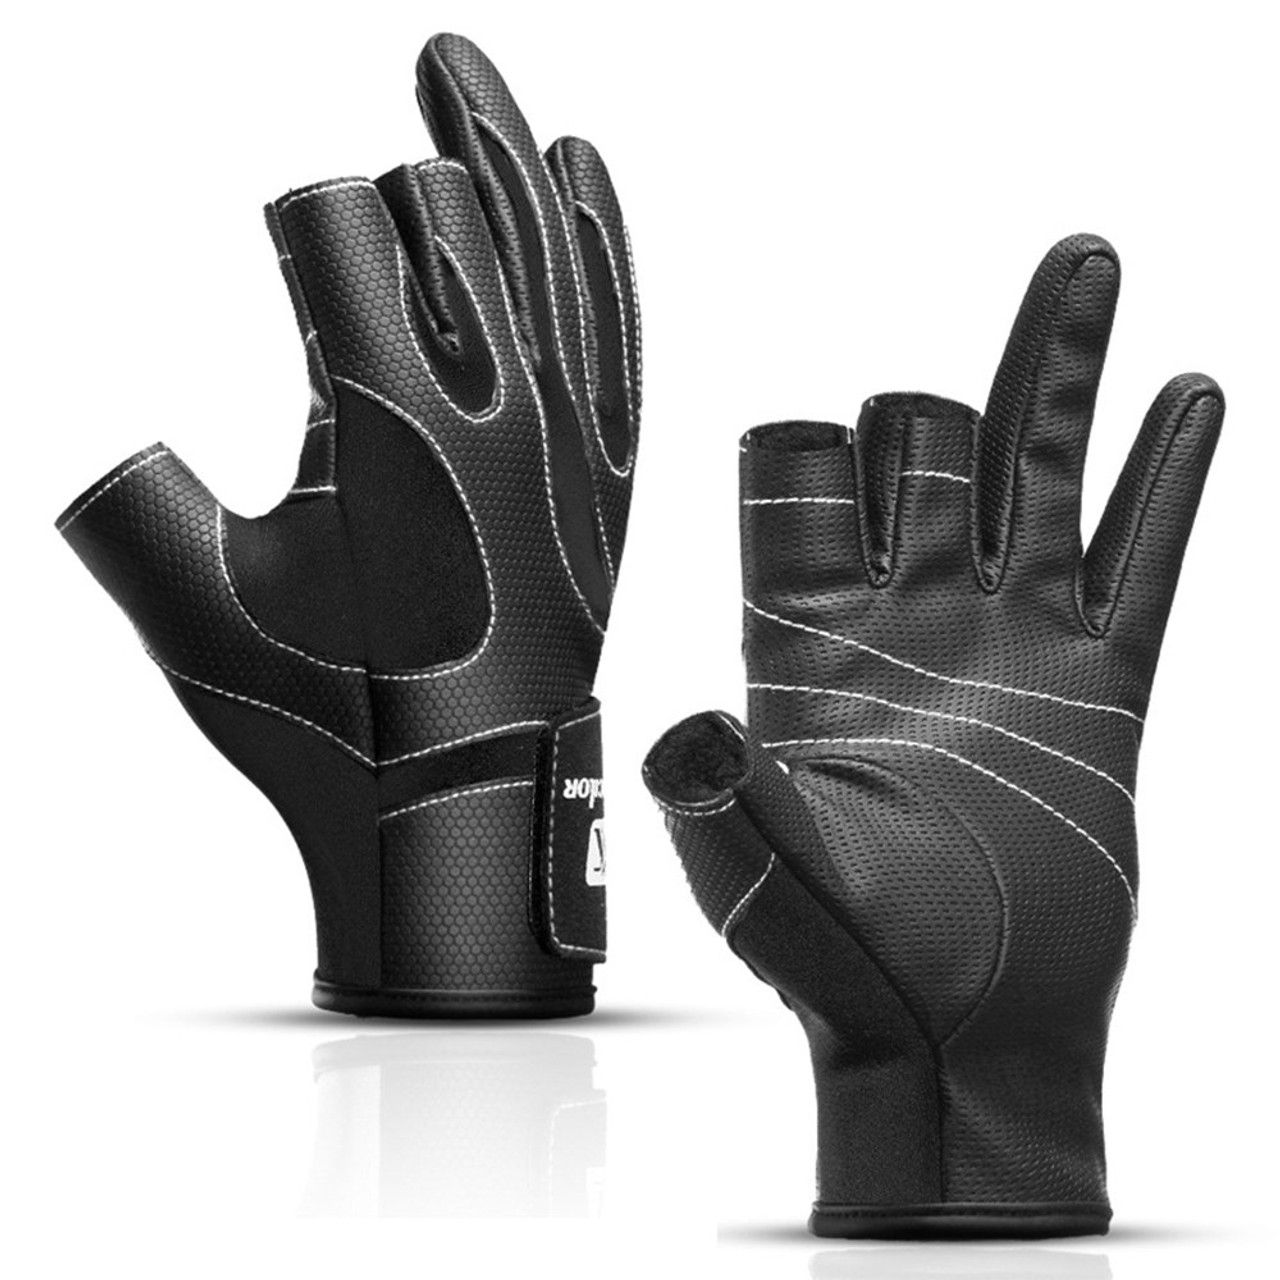  Kyncilor Fishing Gloves for Men Women Half-Finger and